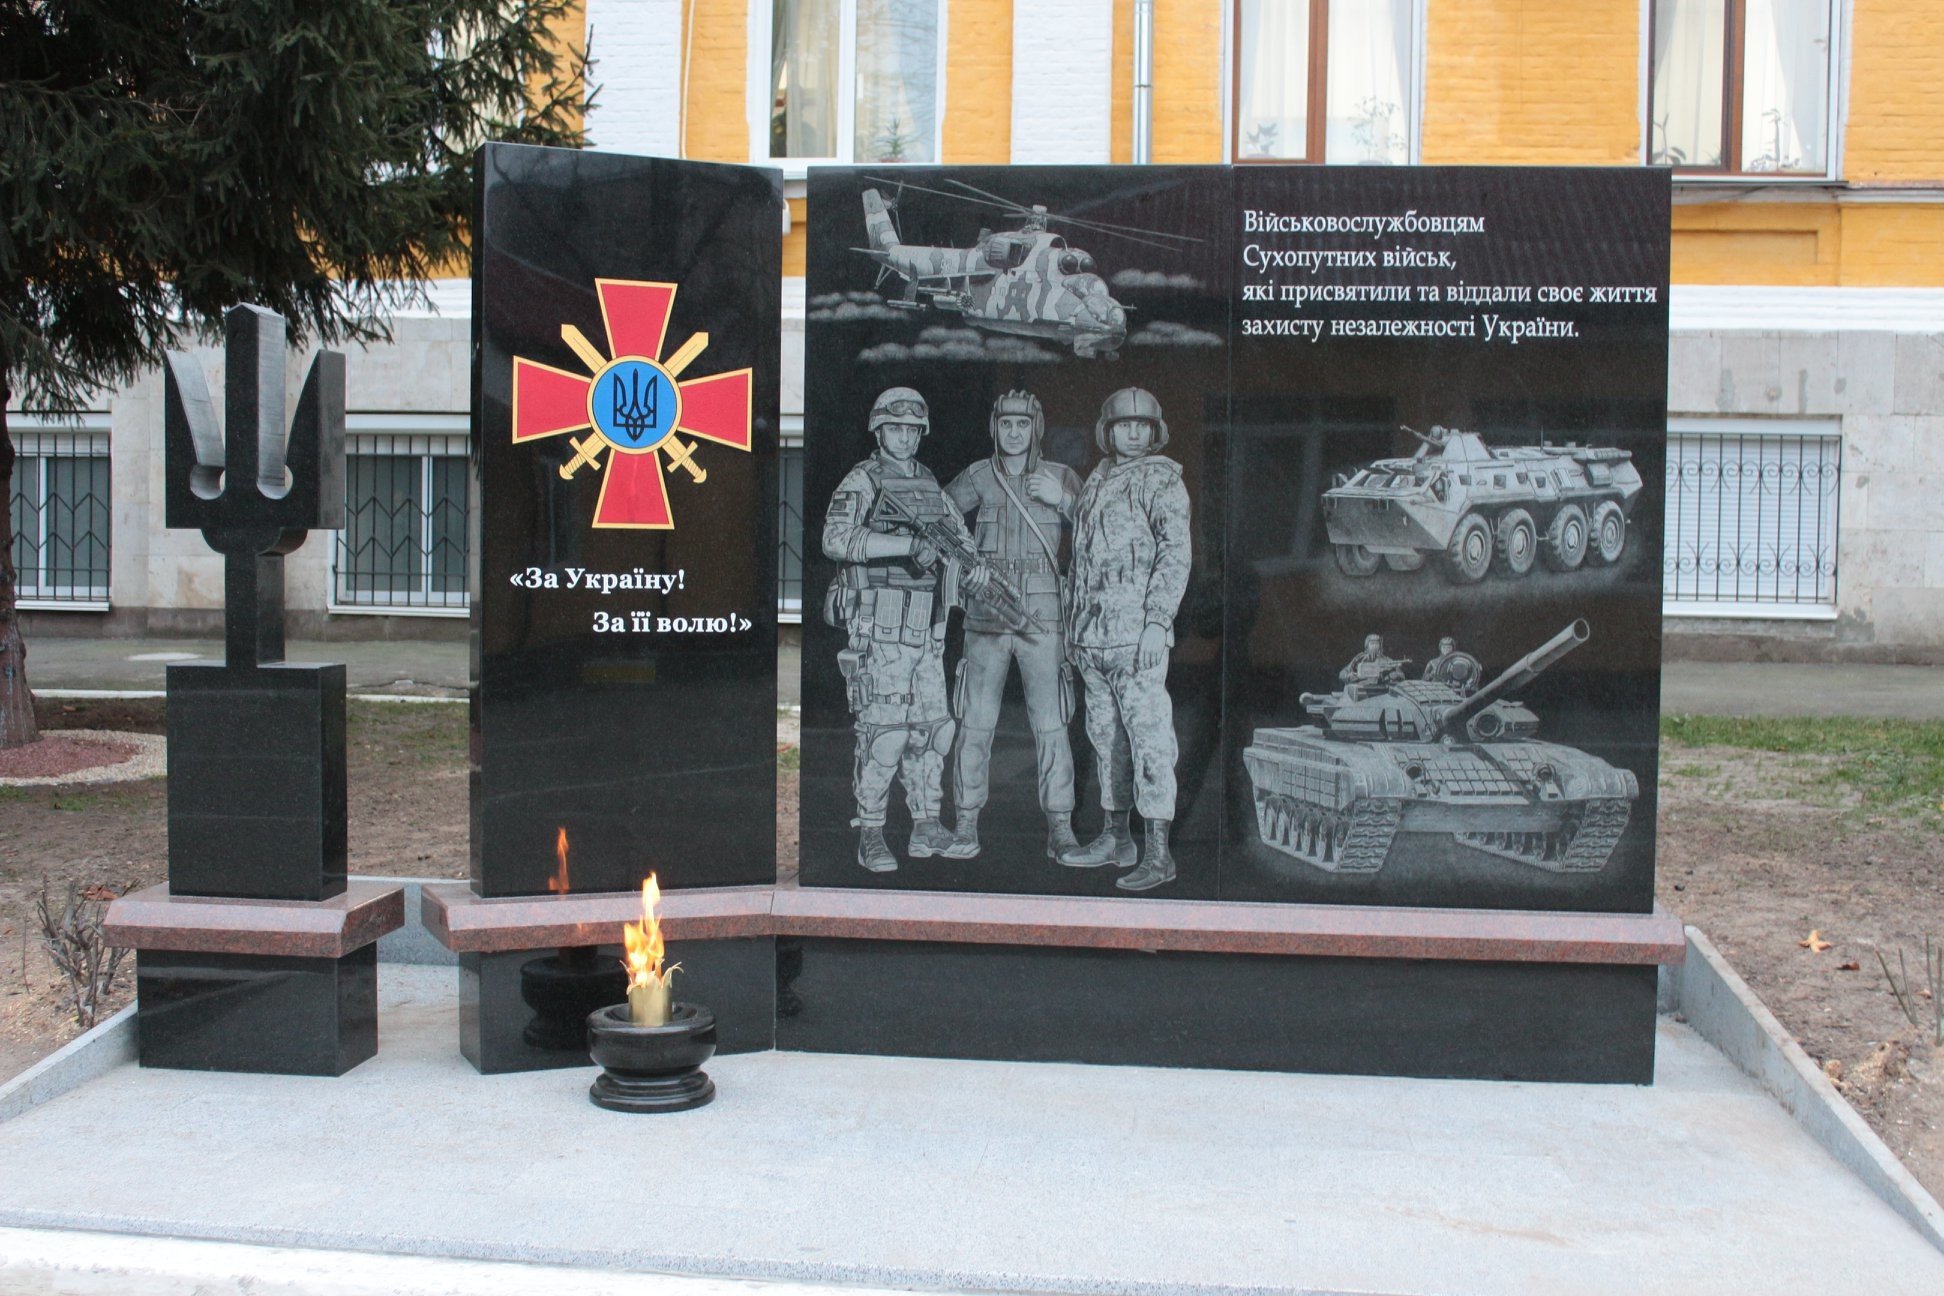 На памятнике участникам ООС изобразили военного, похожего на Зеленского